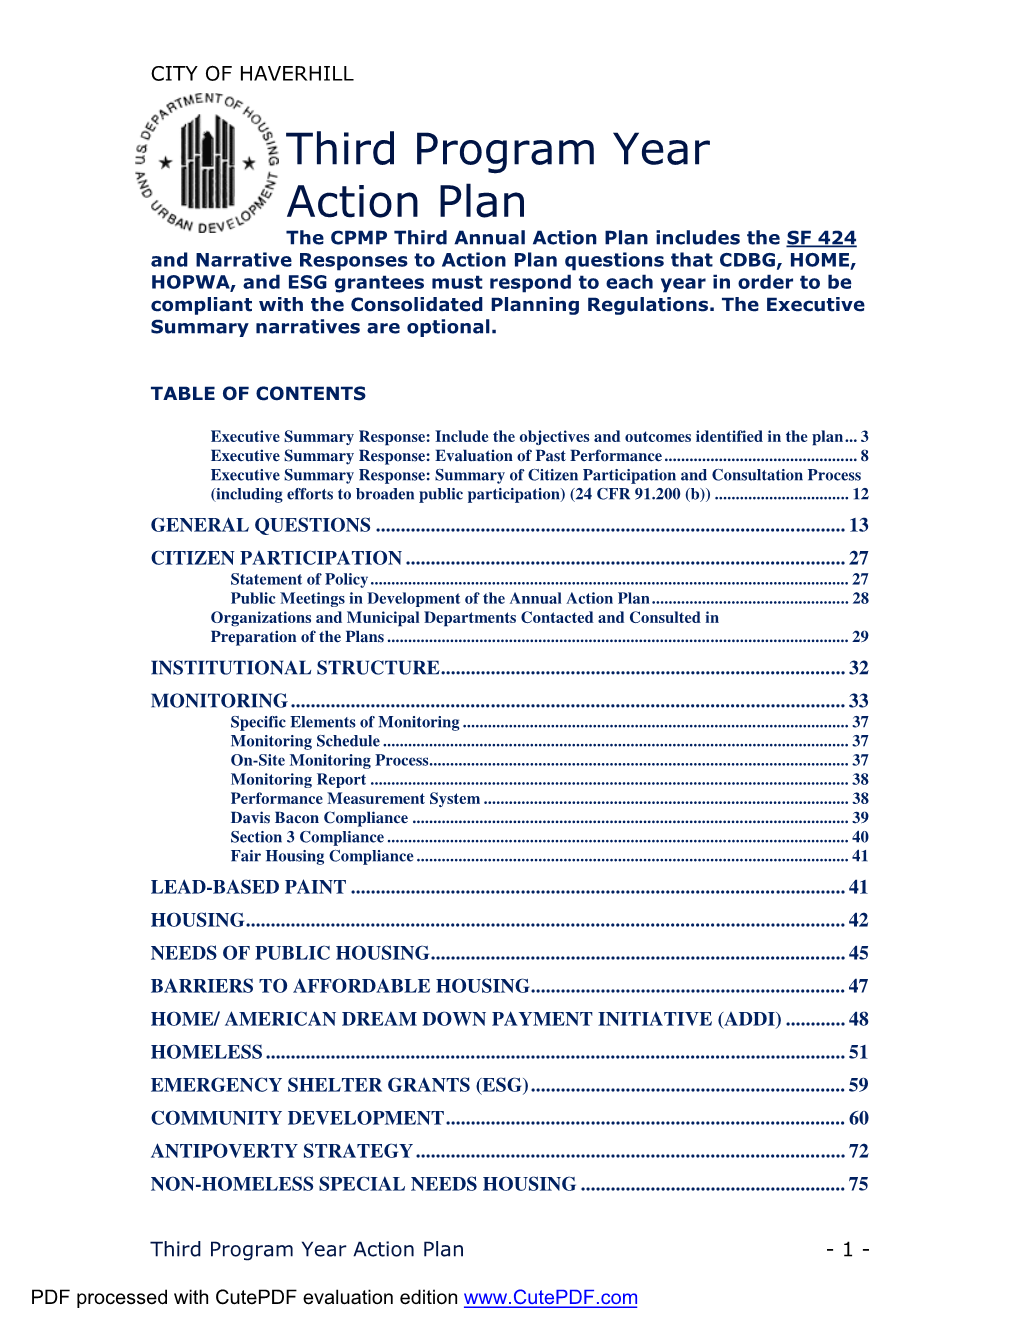 Third Program Year Action Plan